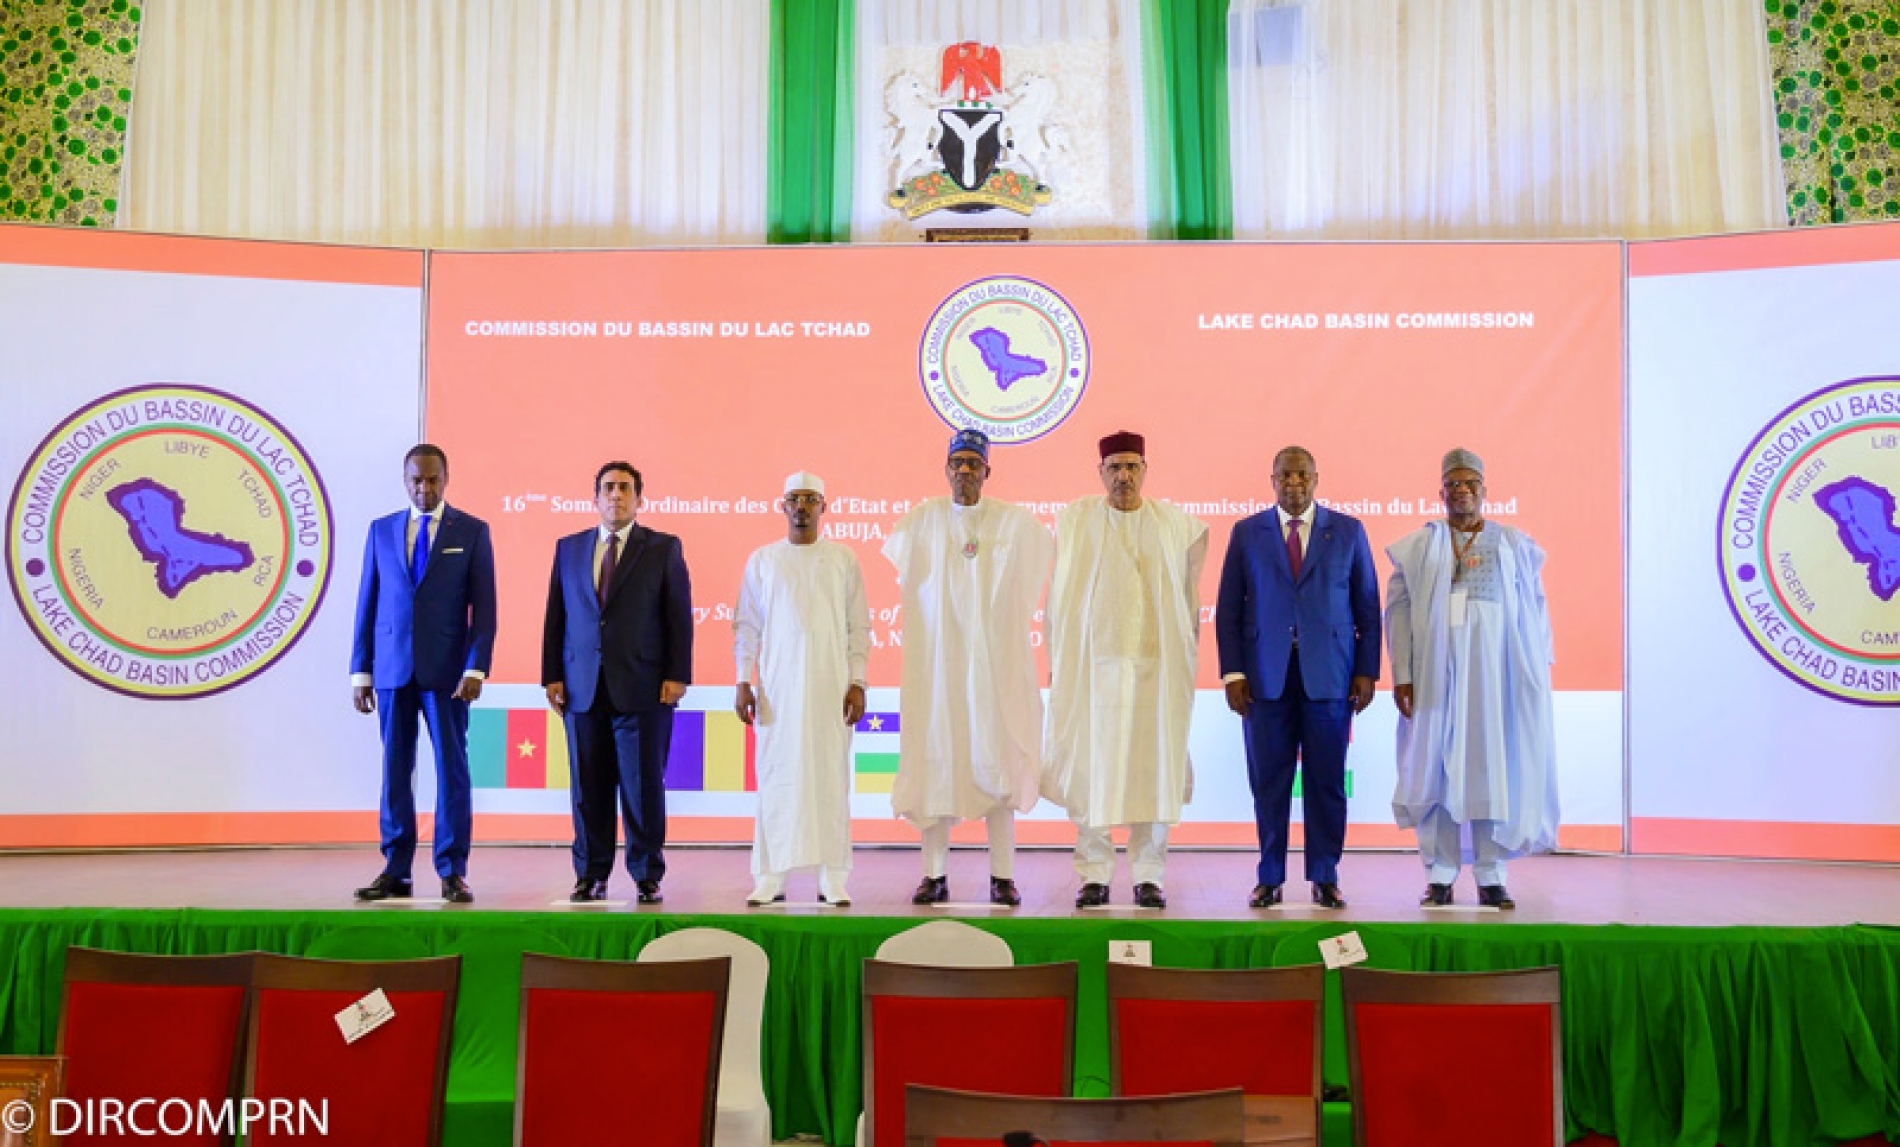 16ème Sommet ordinaire des Chefs d’Etat et de gouvernement de la Commission du bassin du lac Tchad (CBLT) à Abuja (Nigeria) : Le Président Mohamed Bazoum a pris part aux travaux